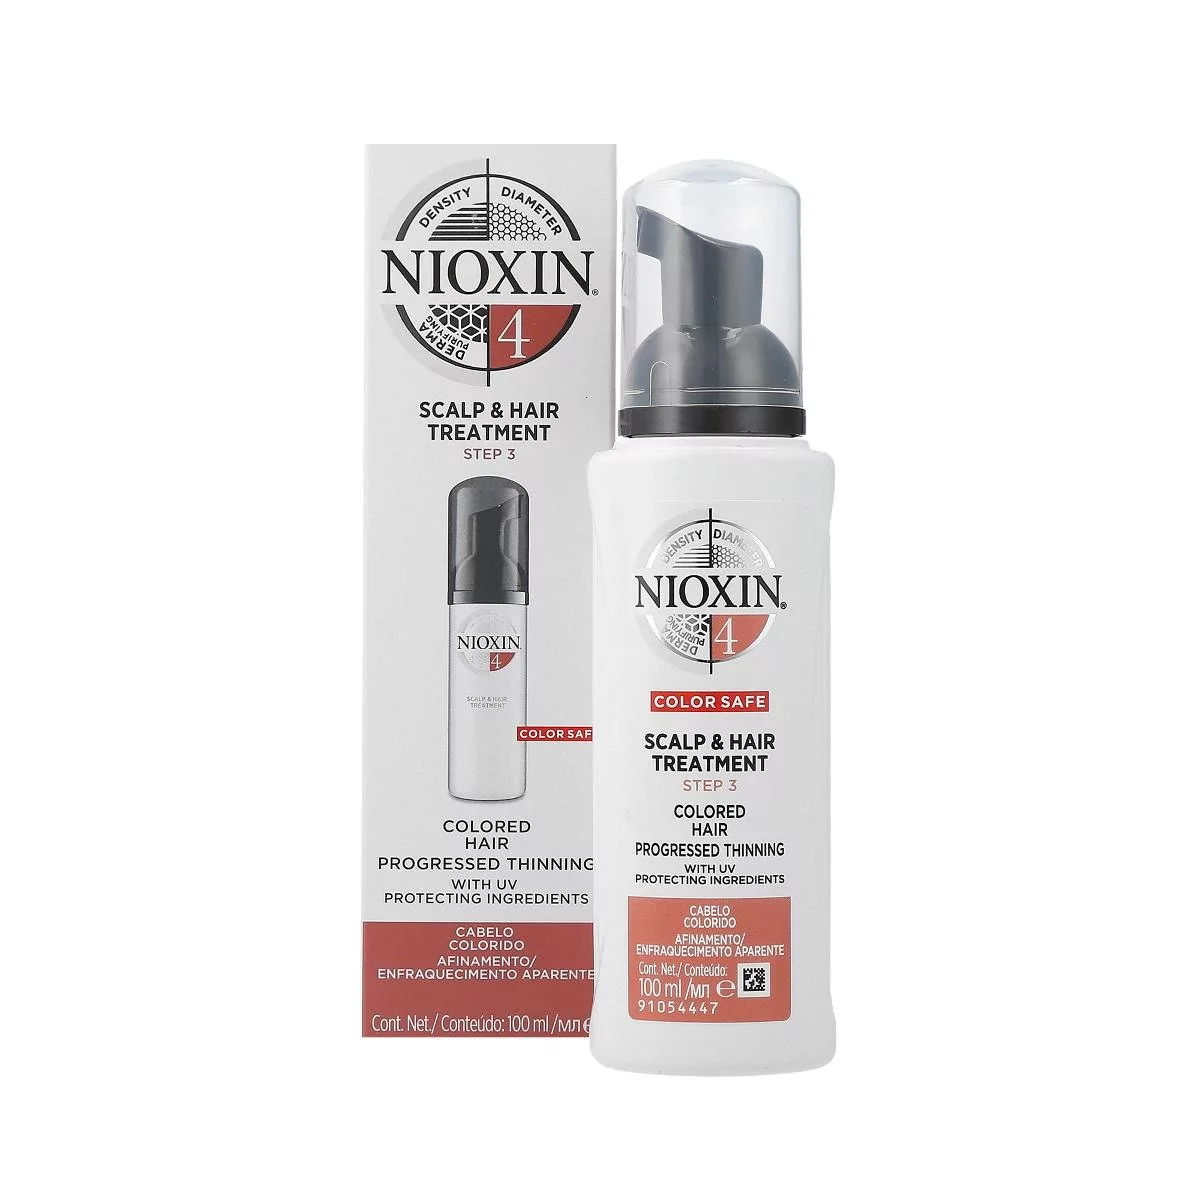 Nioxin 3D CARE SYSTEM 4 Scalp Treatment Kuracja zagęszczająca włosy 100ml 0000063993